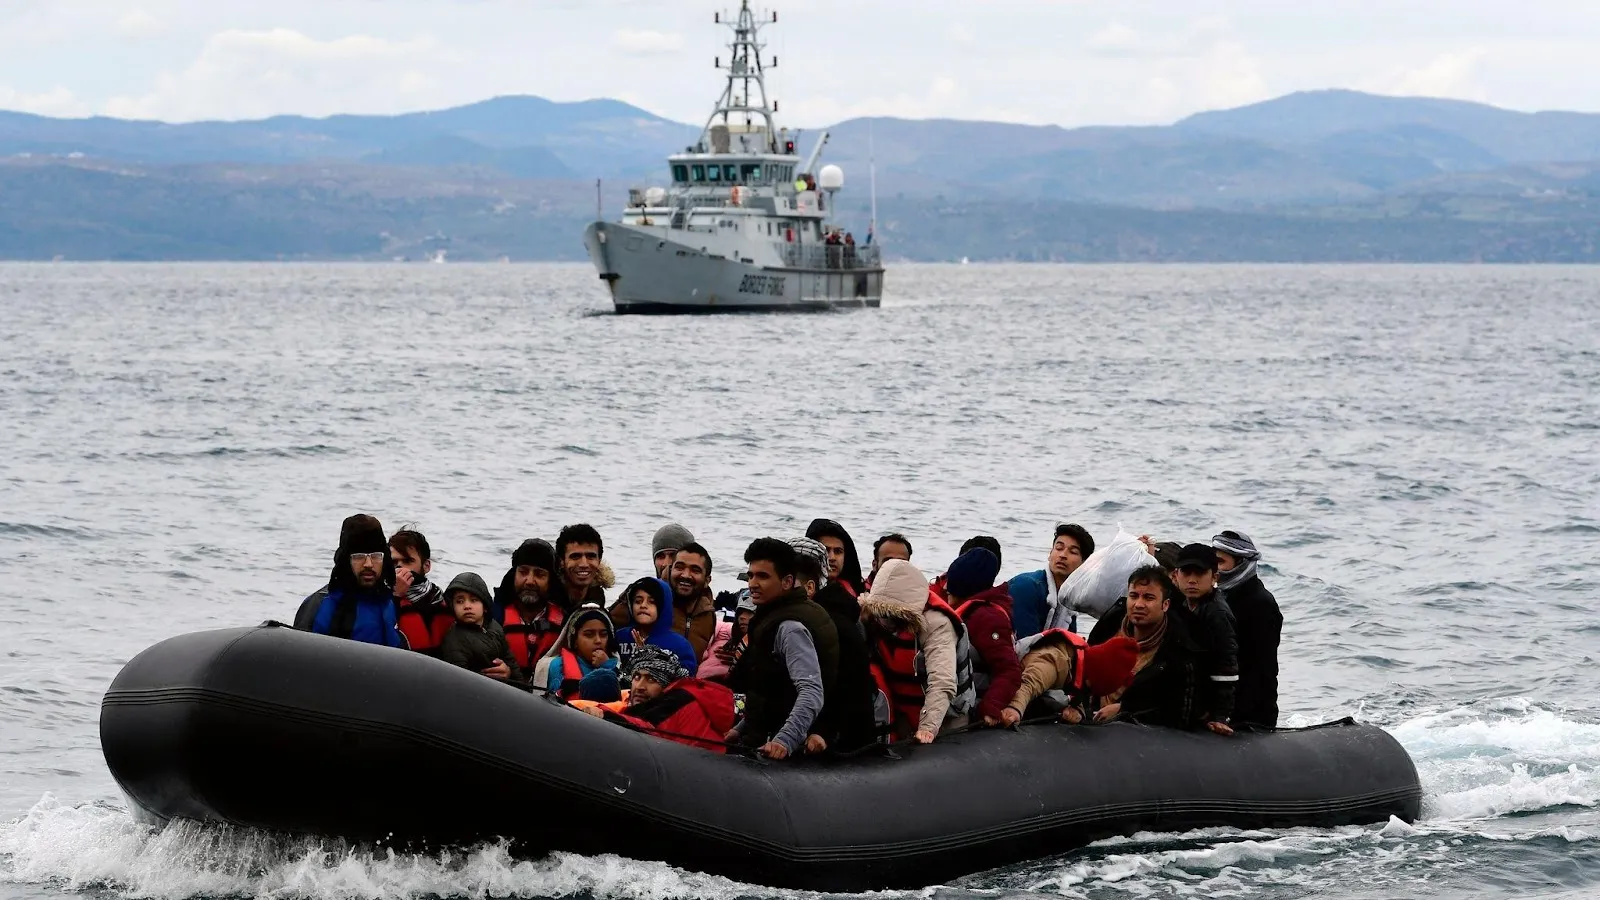 المفوضية الأوروبية تقدم خطة عمل لـ "الاتحاد الأوروبي" لمعالجة تدفق طالبي اللجوء